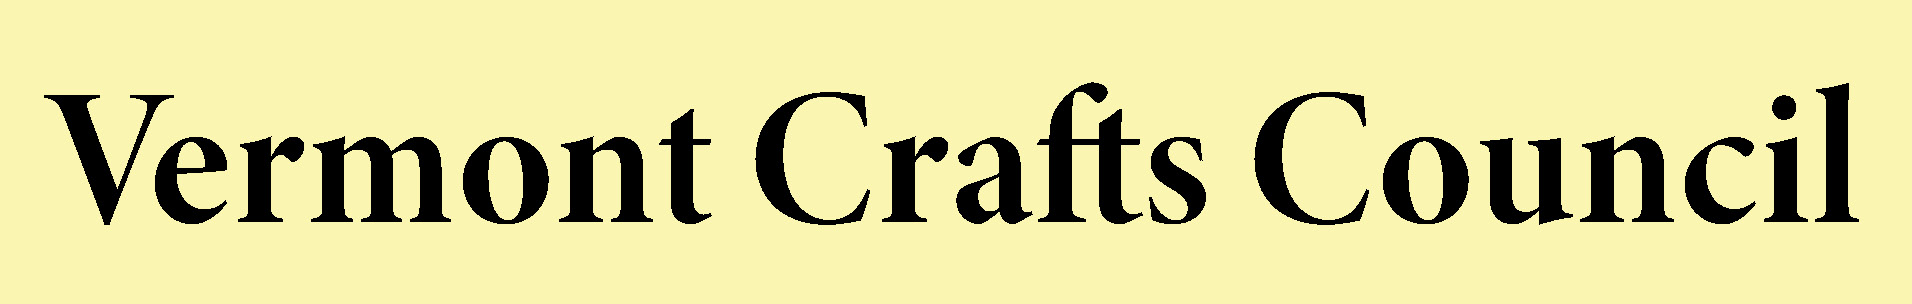 Vermont Crafts Council